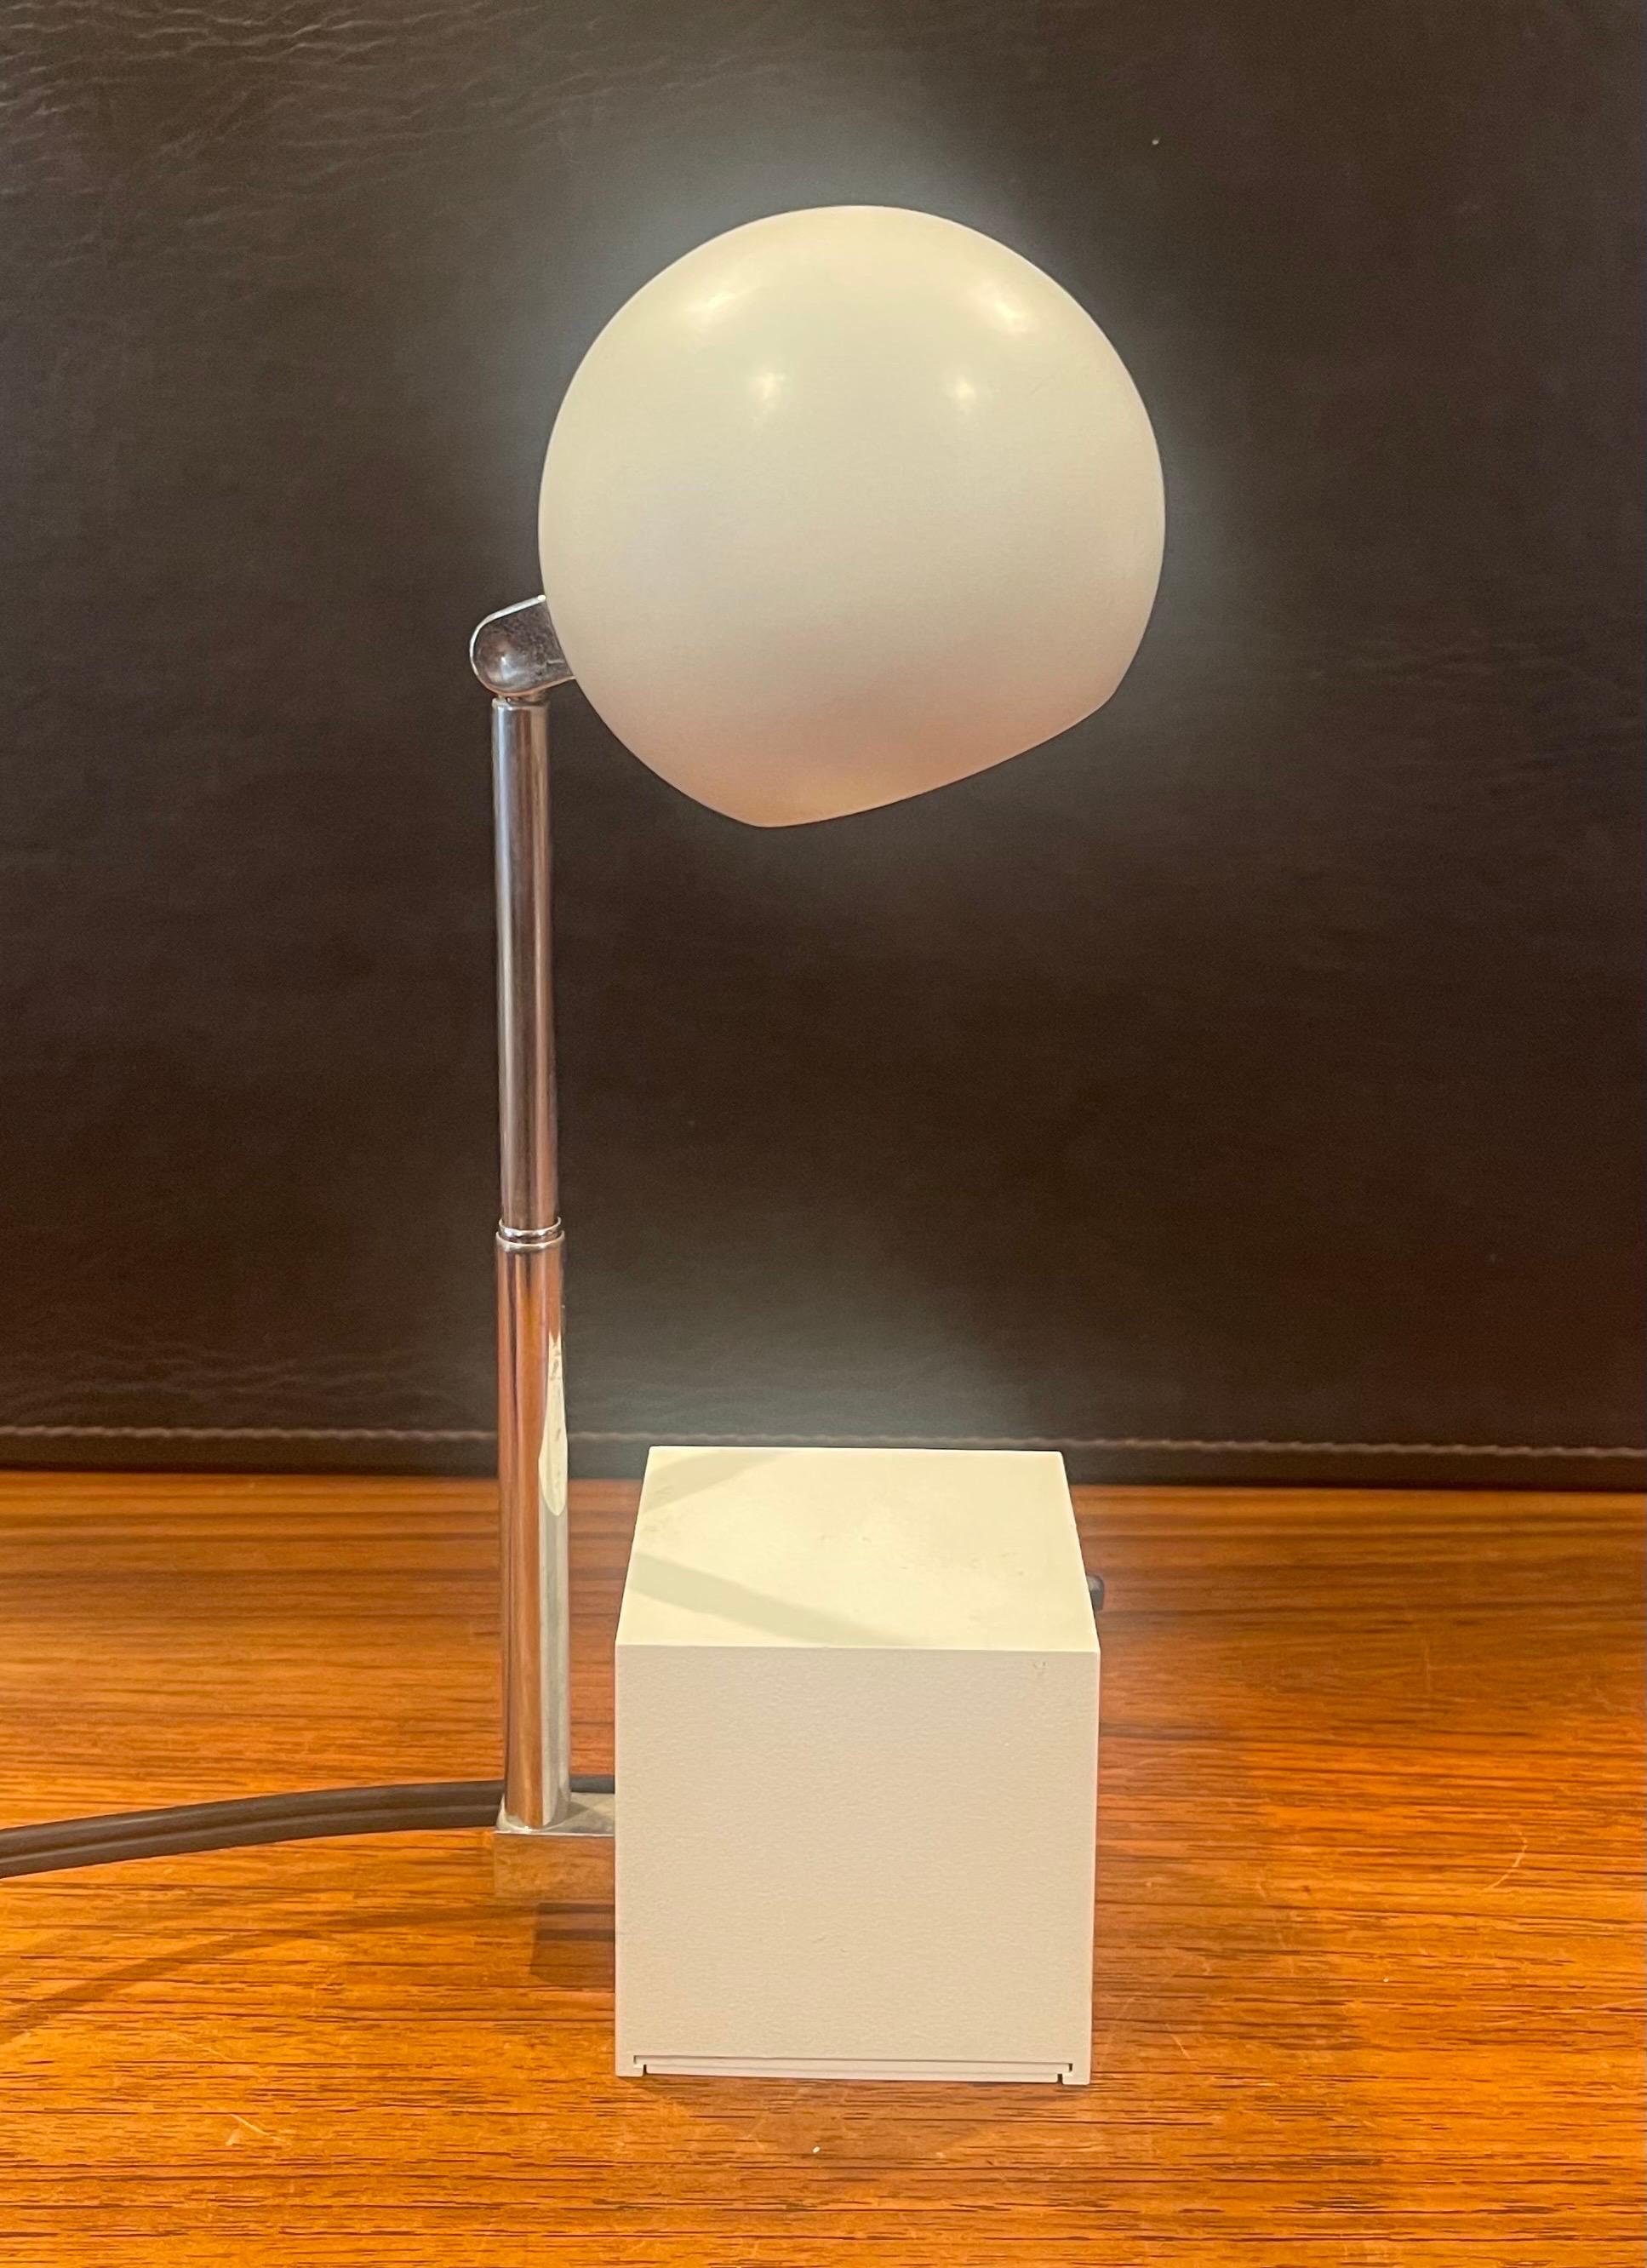 American Lytegem Spherical Desk Lamp by Michael Lax for Lightoiler For Sale